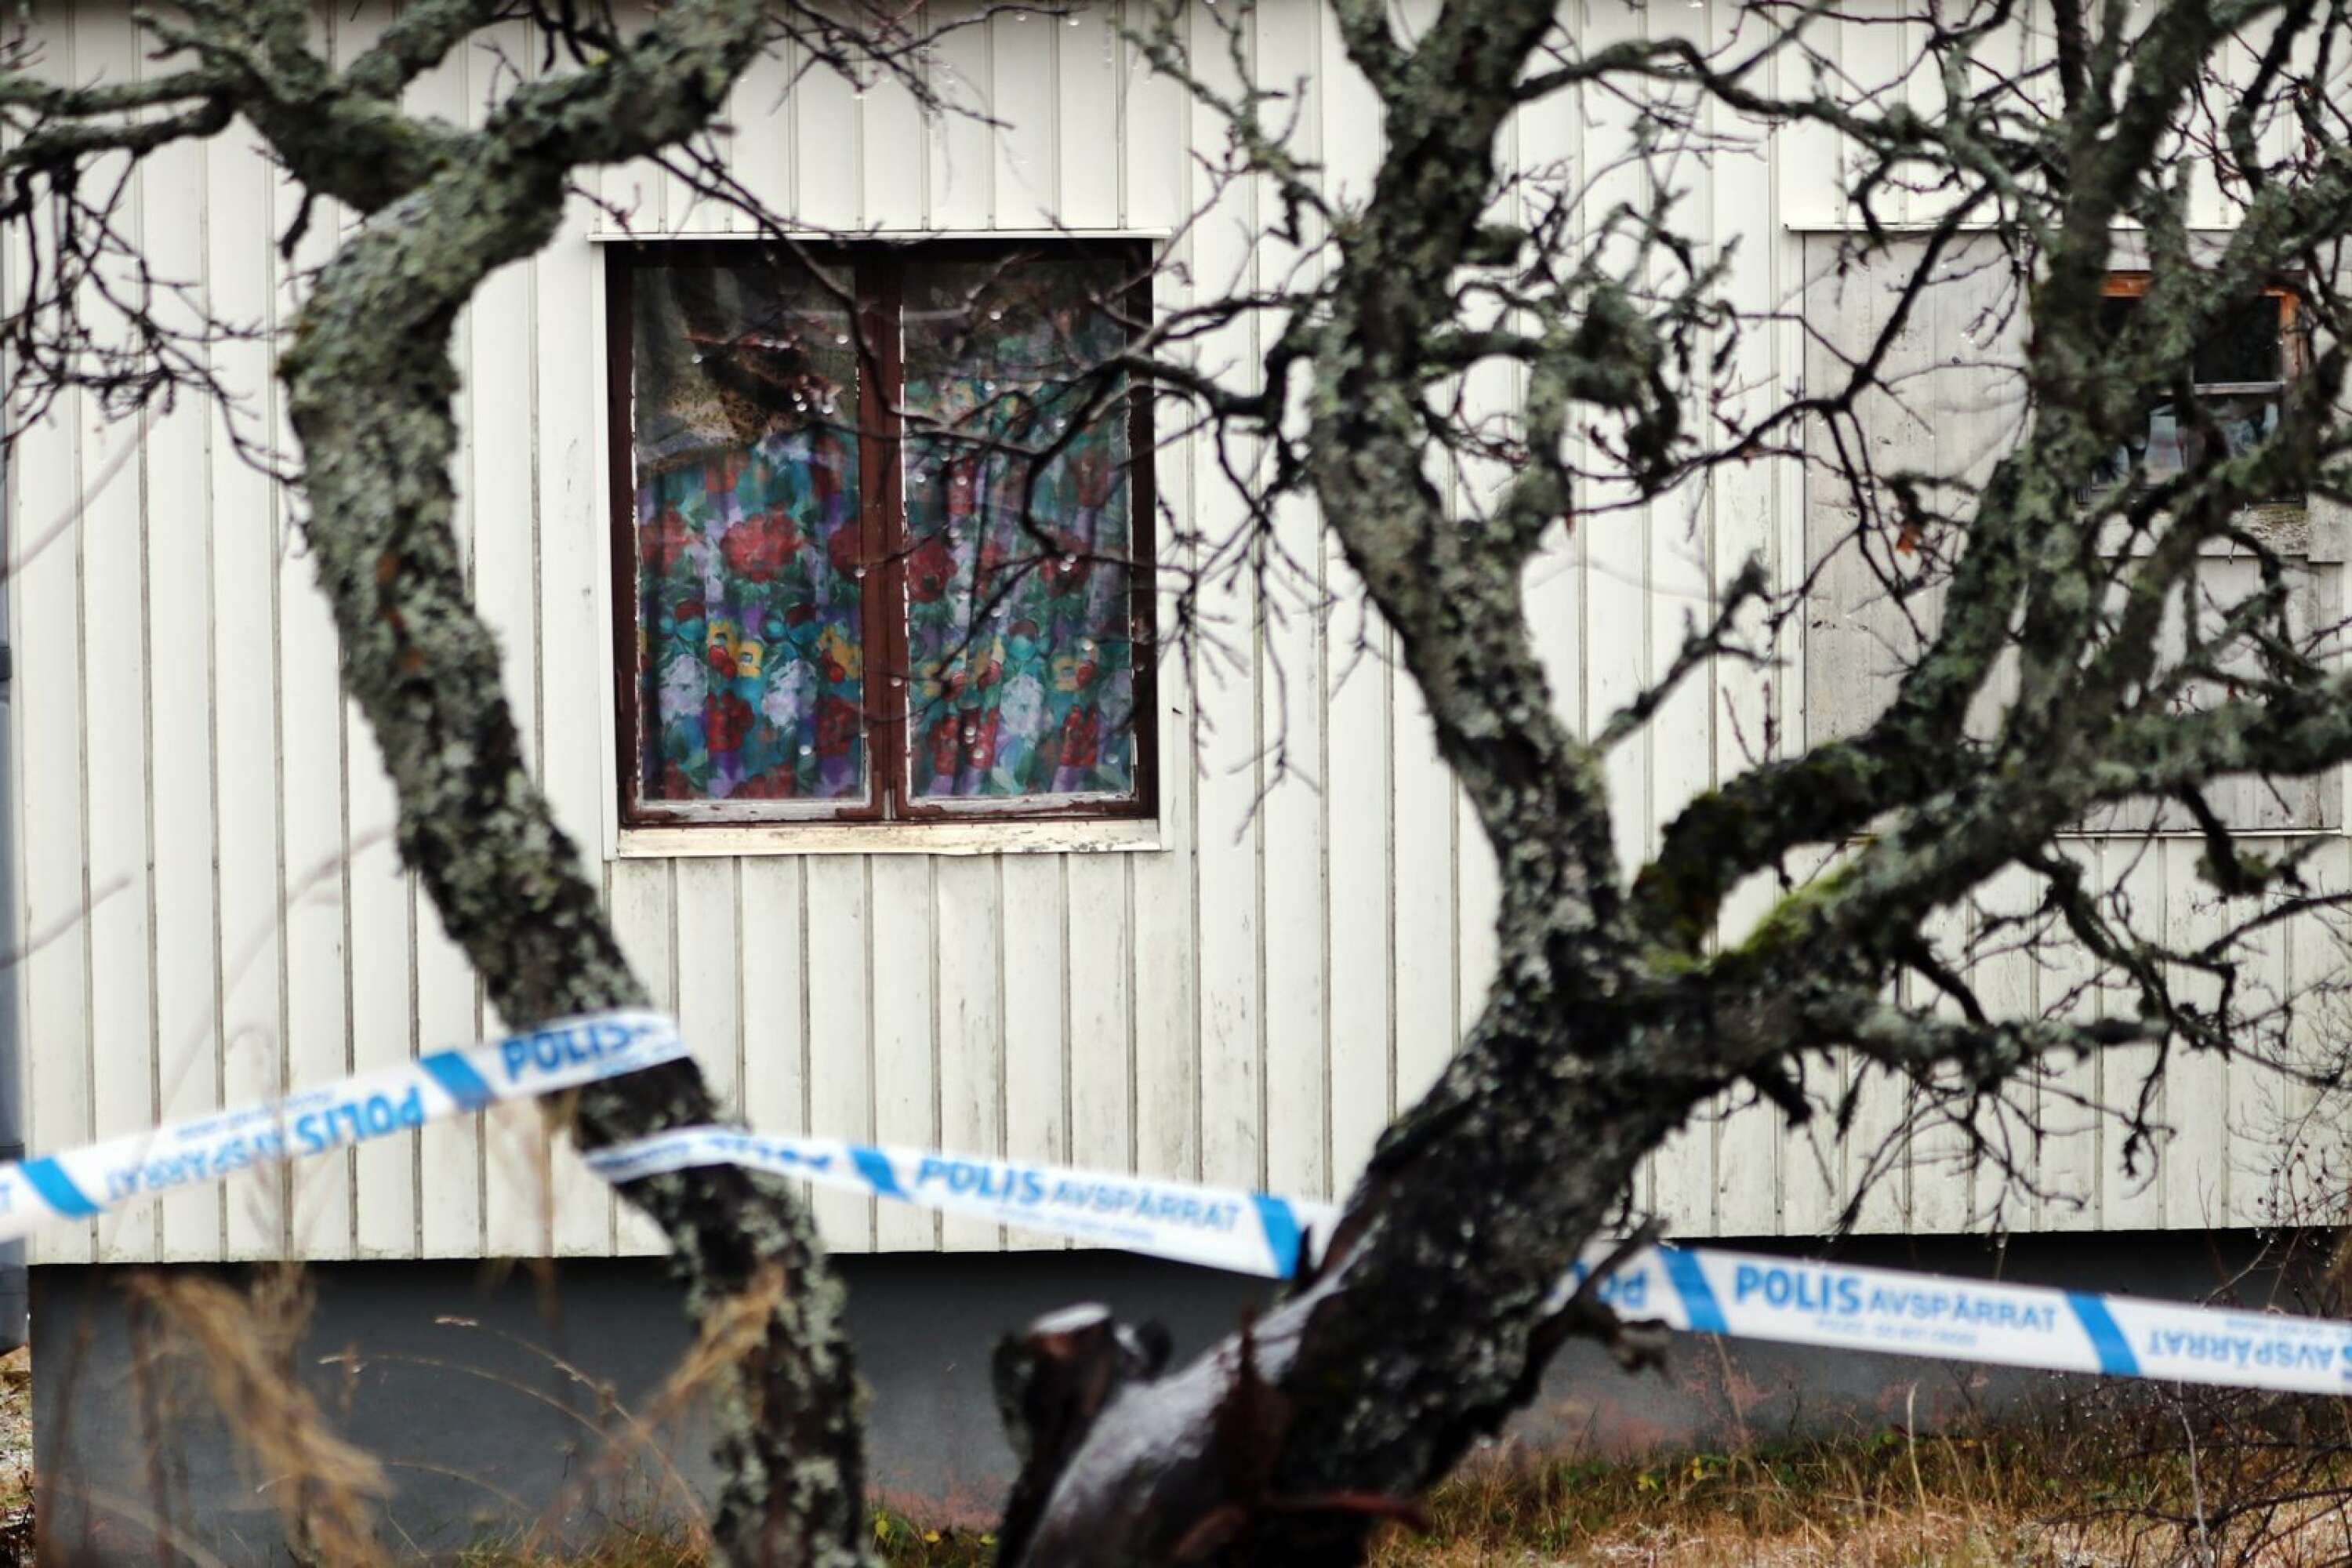 Kari Ylioja hittades ihjälslagen i det vita trähuset i Lesjöfors.